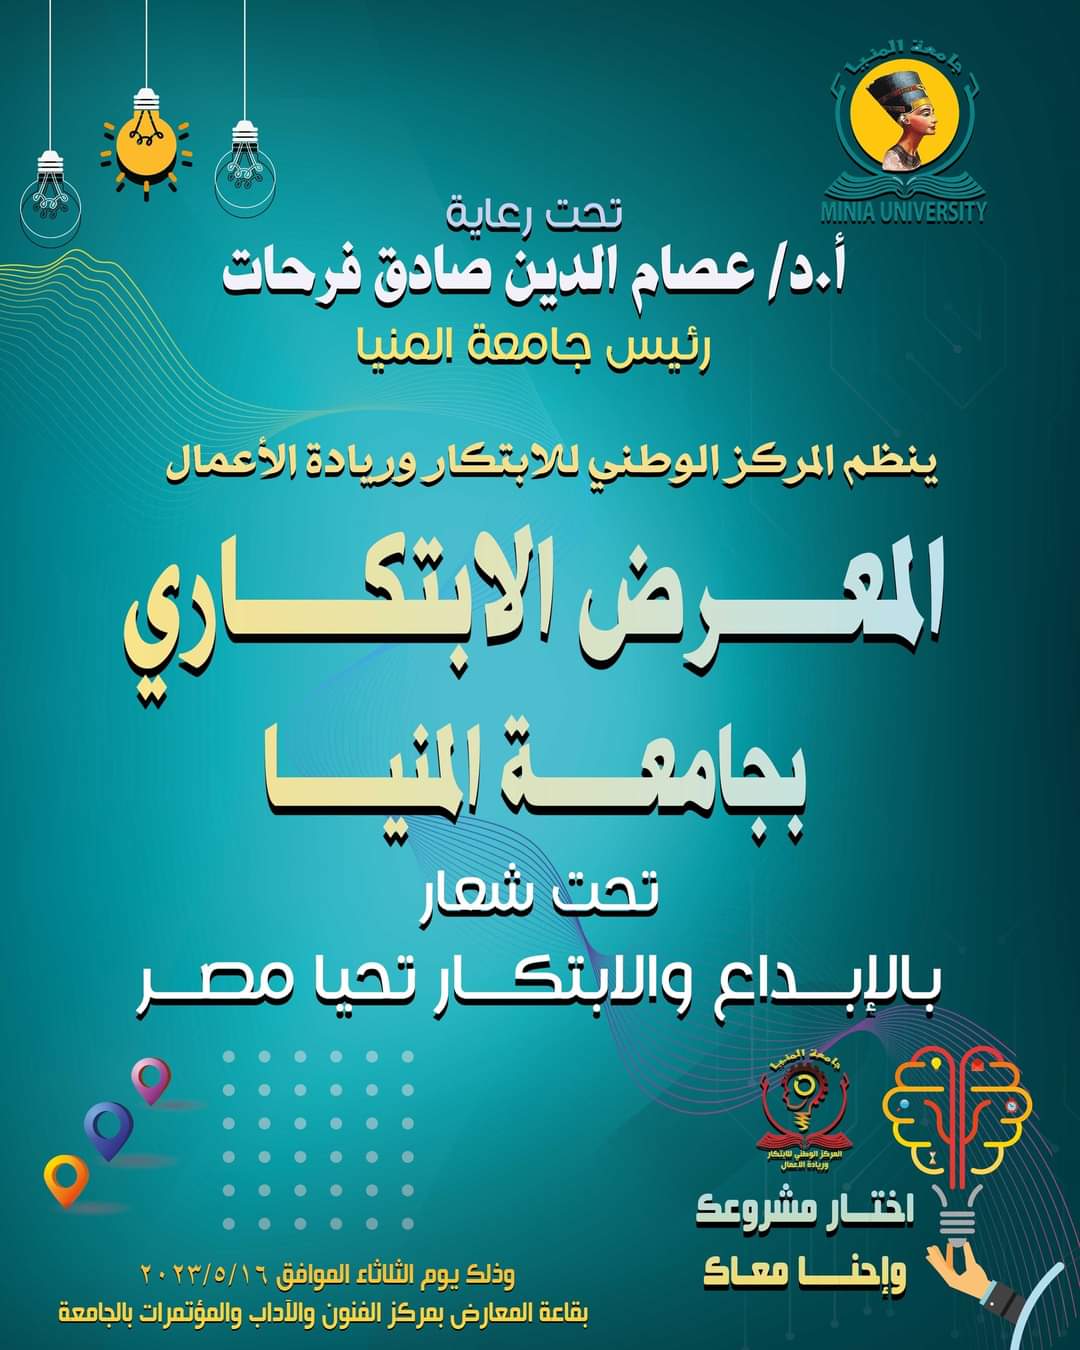 ١٦ مايو انطلاق المعرض الابتكاري لكليات جامعة المنيا تحت شعار بالإبداع والابتكار تحيا مصر